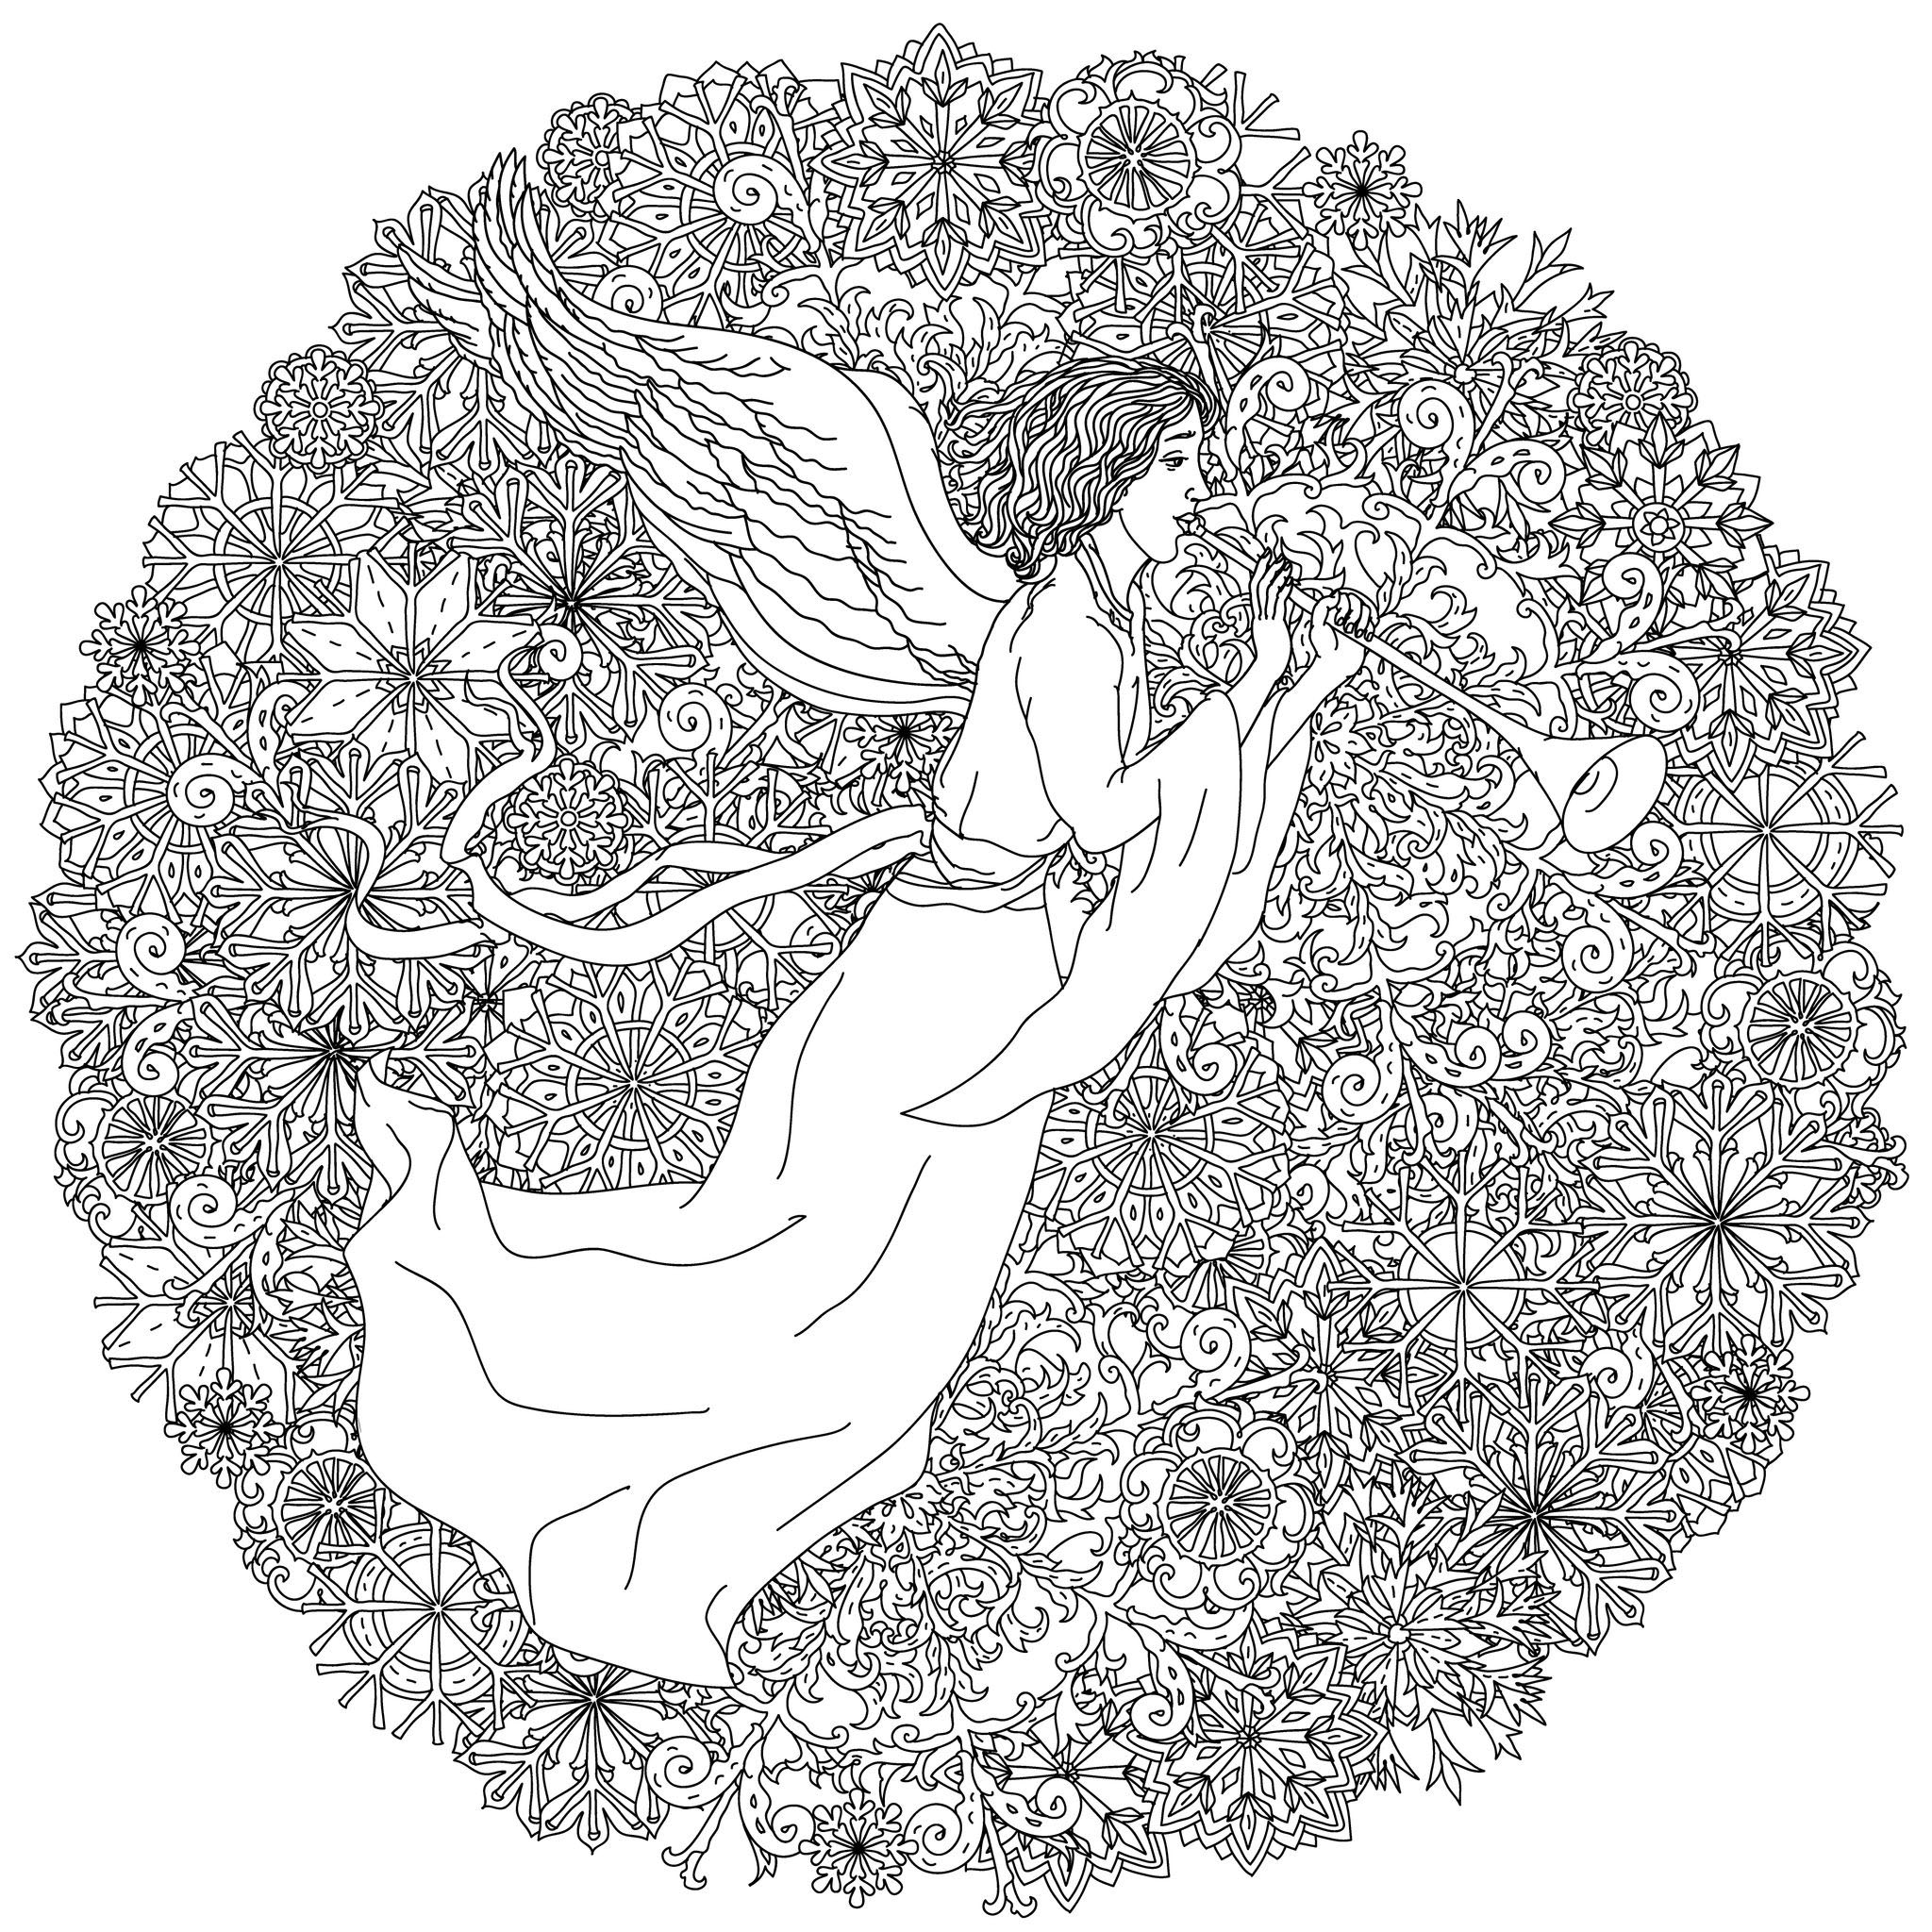 Colorate questo incredibile disegno circolare con un angelo circondato da tanti fiocchi di neve, Fonte : 123rf   Artista : Mashabr